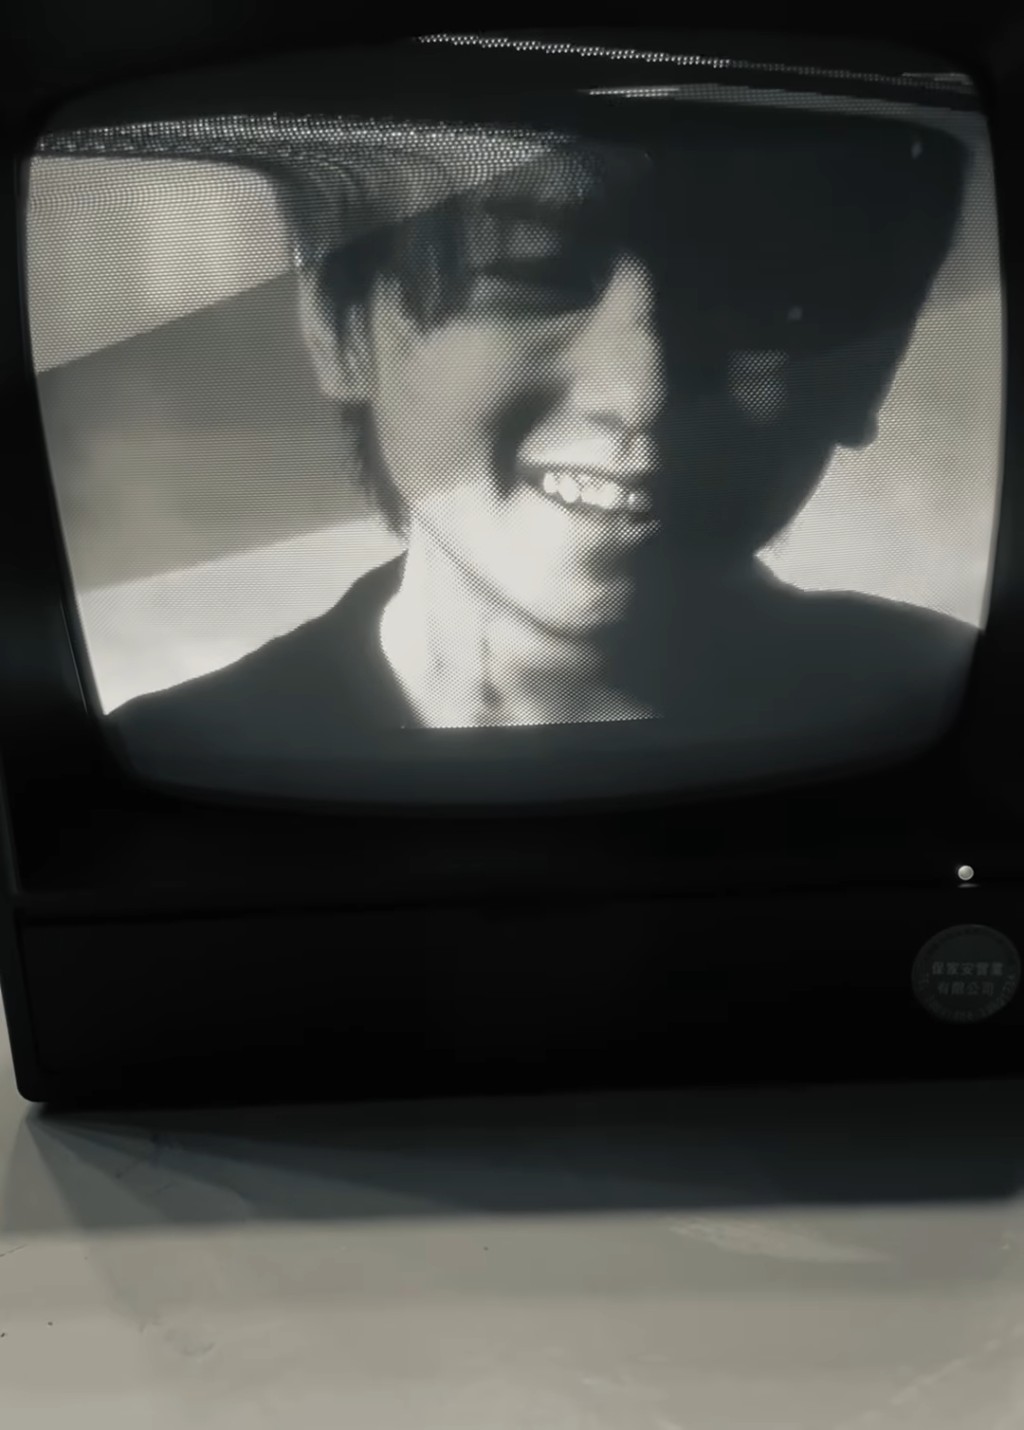 姜濤於社交網上載一段疑似新歌《Dummy》MV的花絮黑白短片。